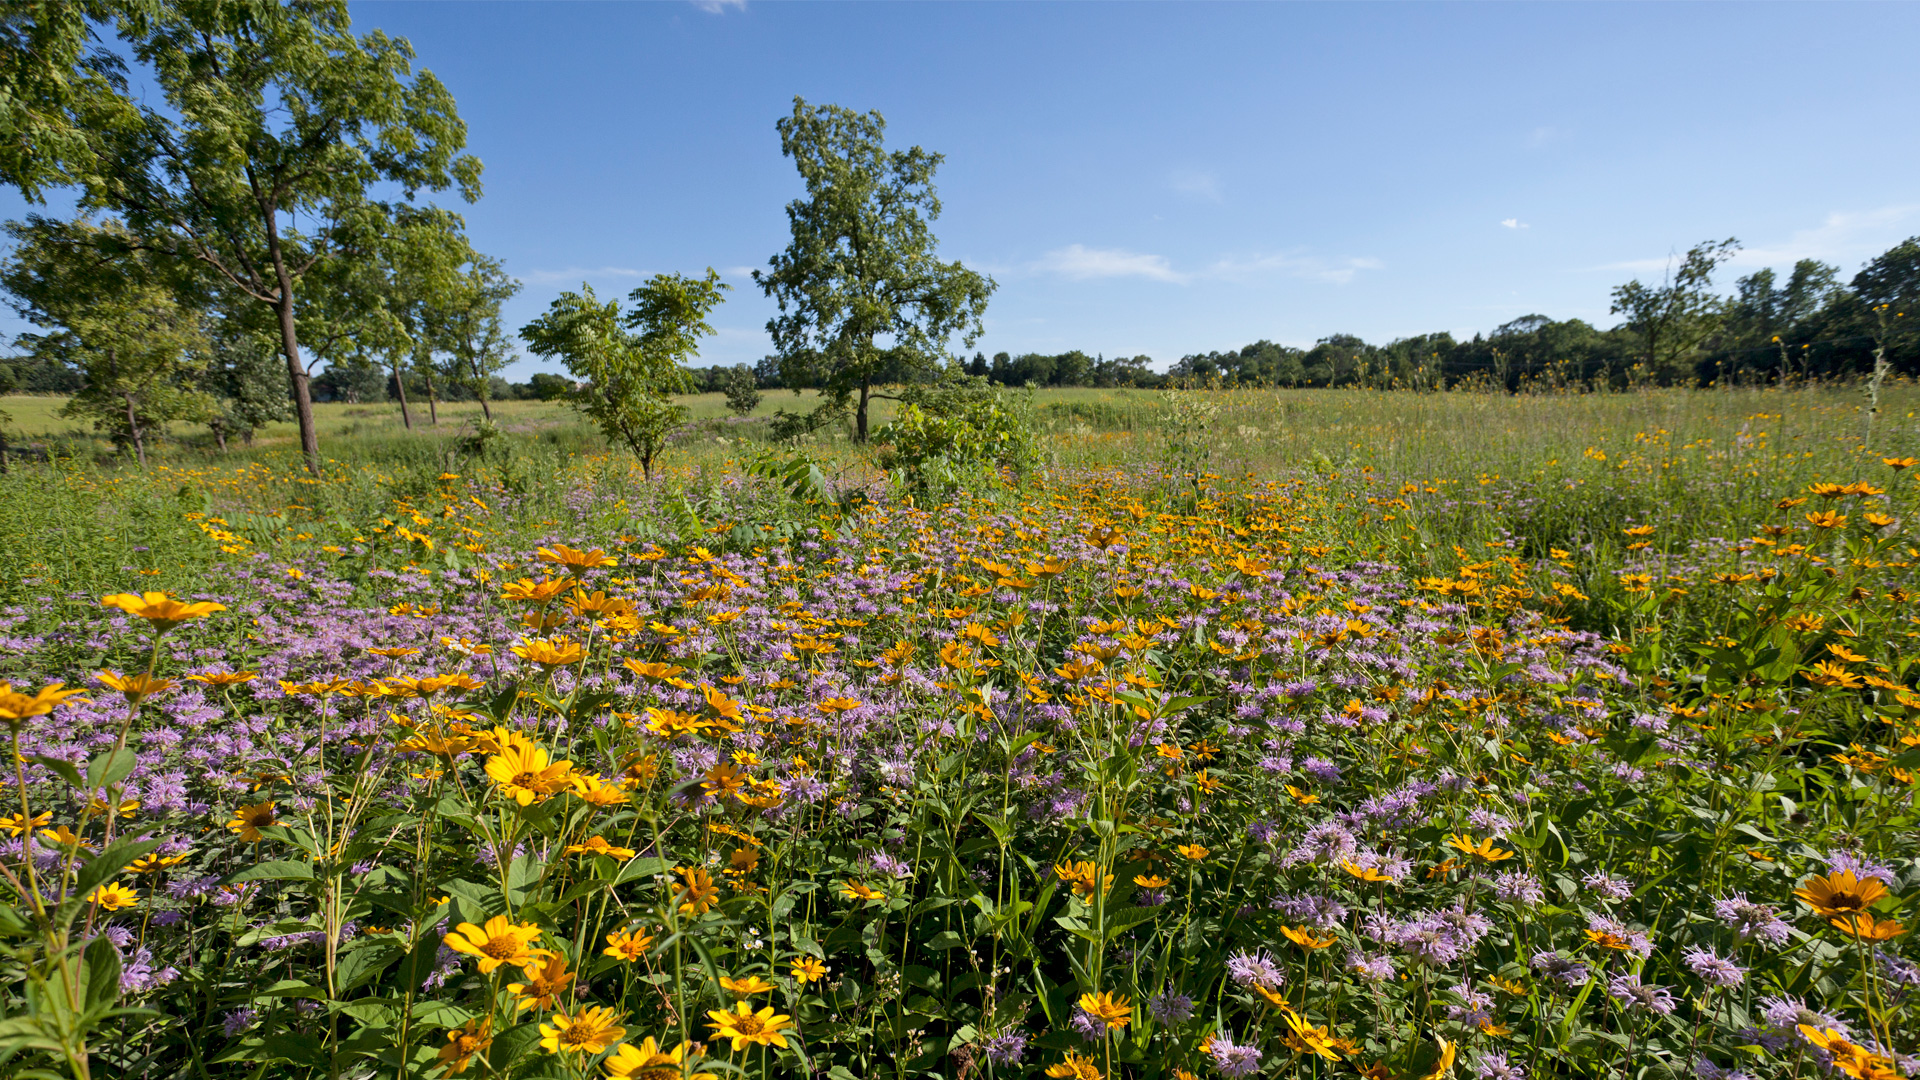 Flowers bloom in the Schulenberg Prairie in summer